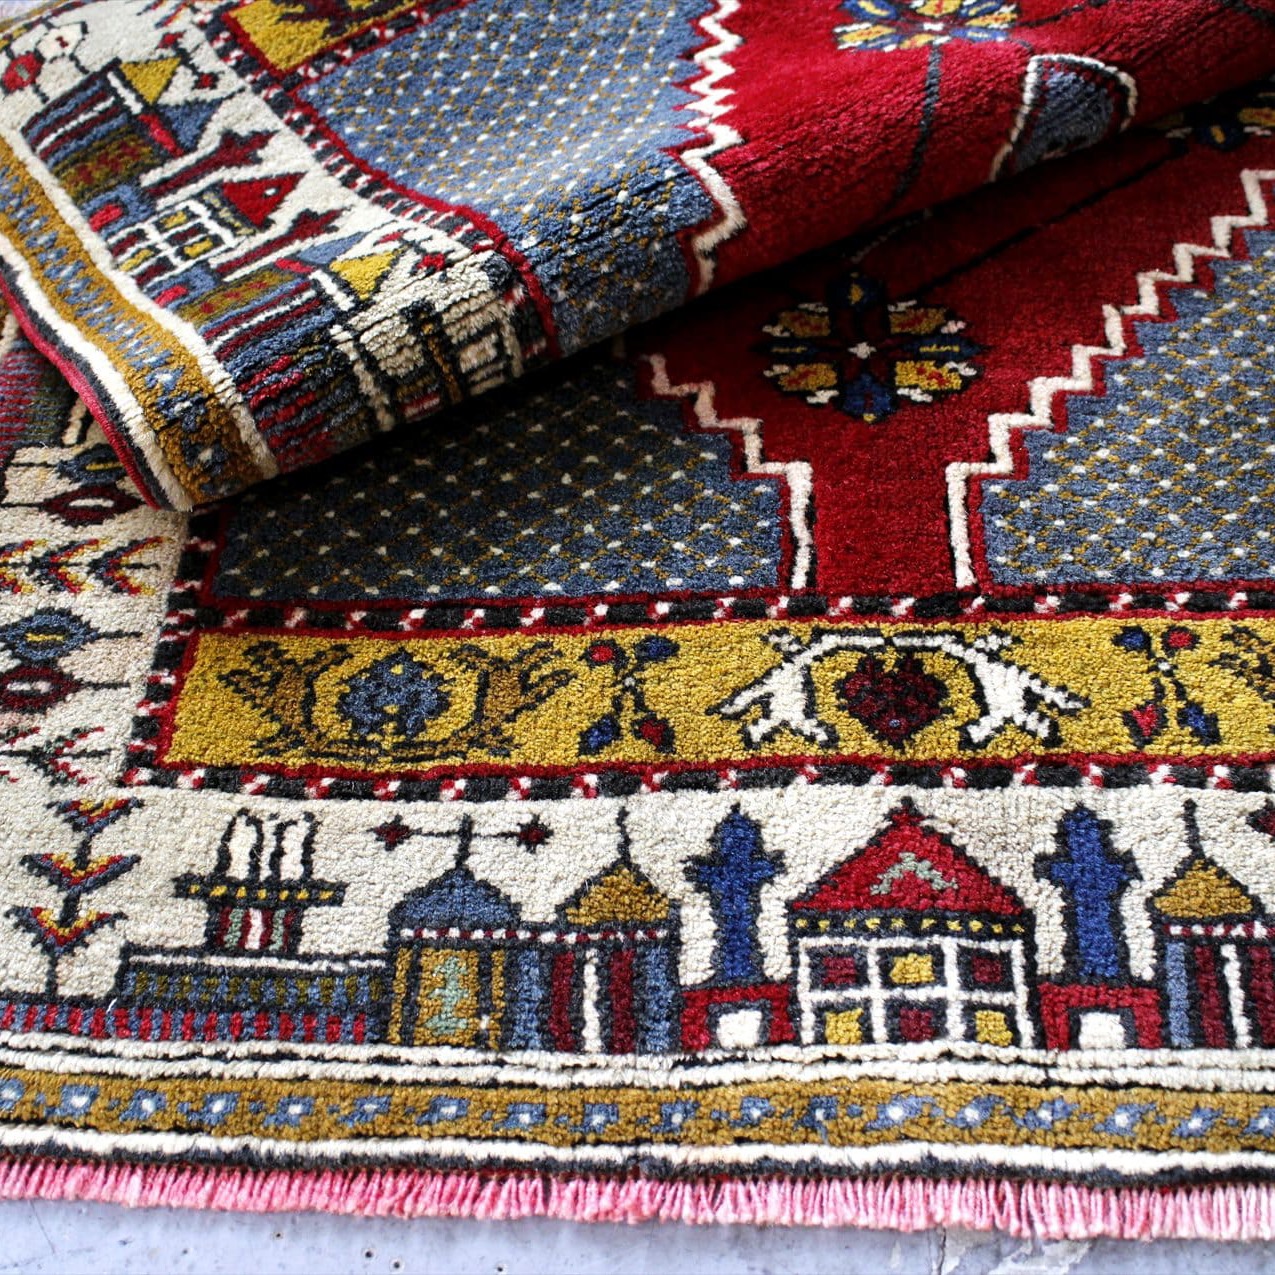 オールドカーペット・カイセリ・ヤヒヤル・トルコ手織り絨毯134×81cm 赤のメダリオンと町の風景